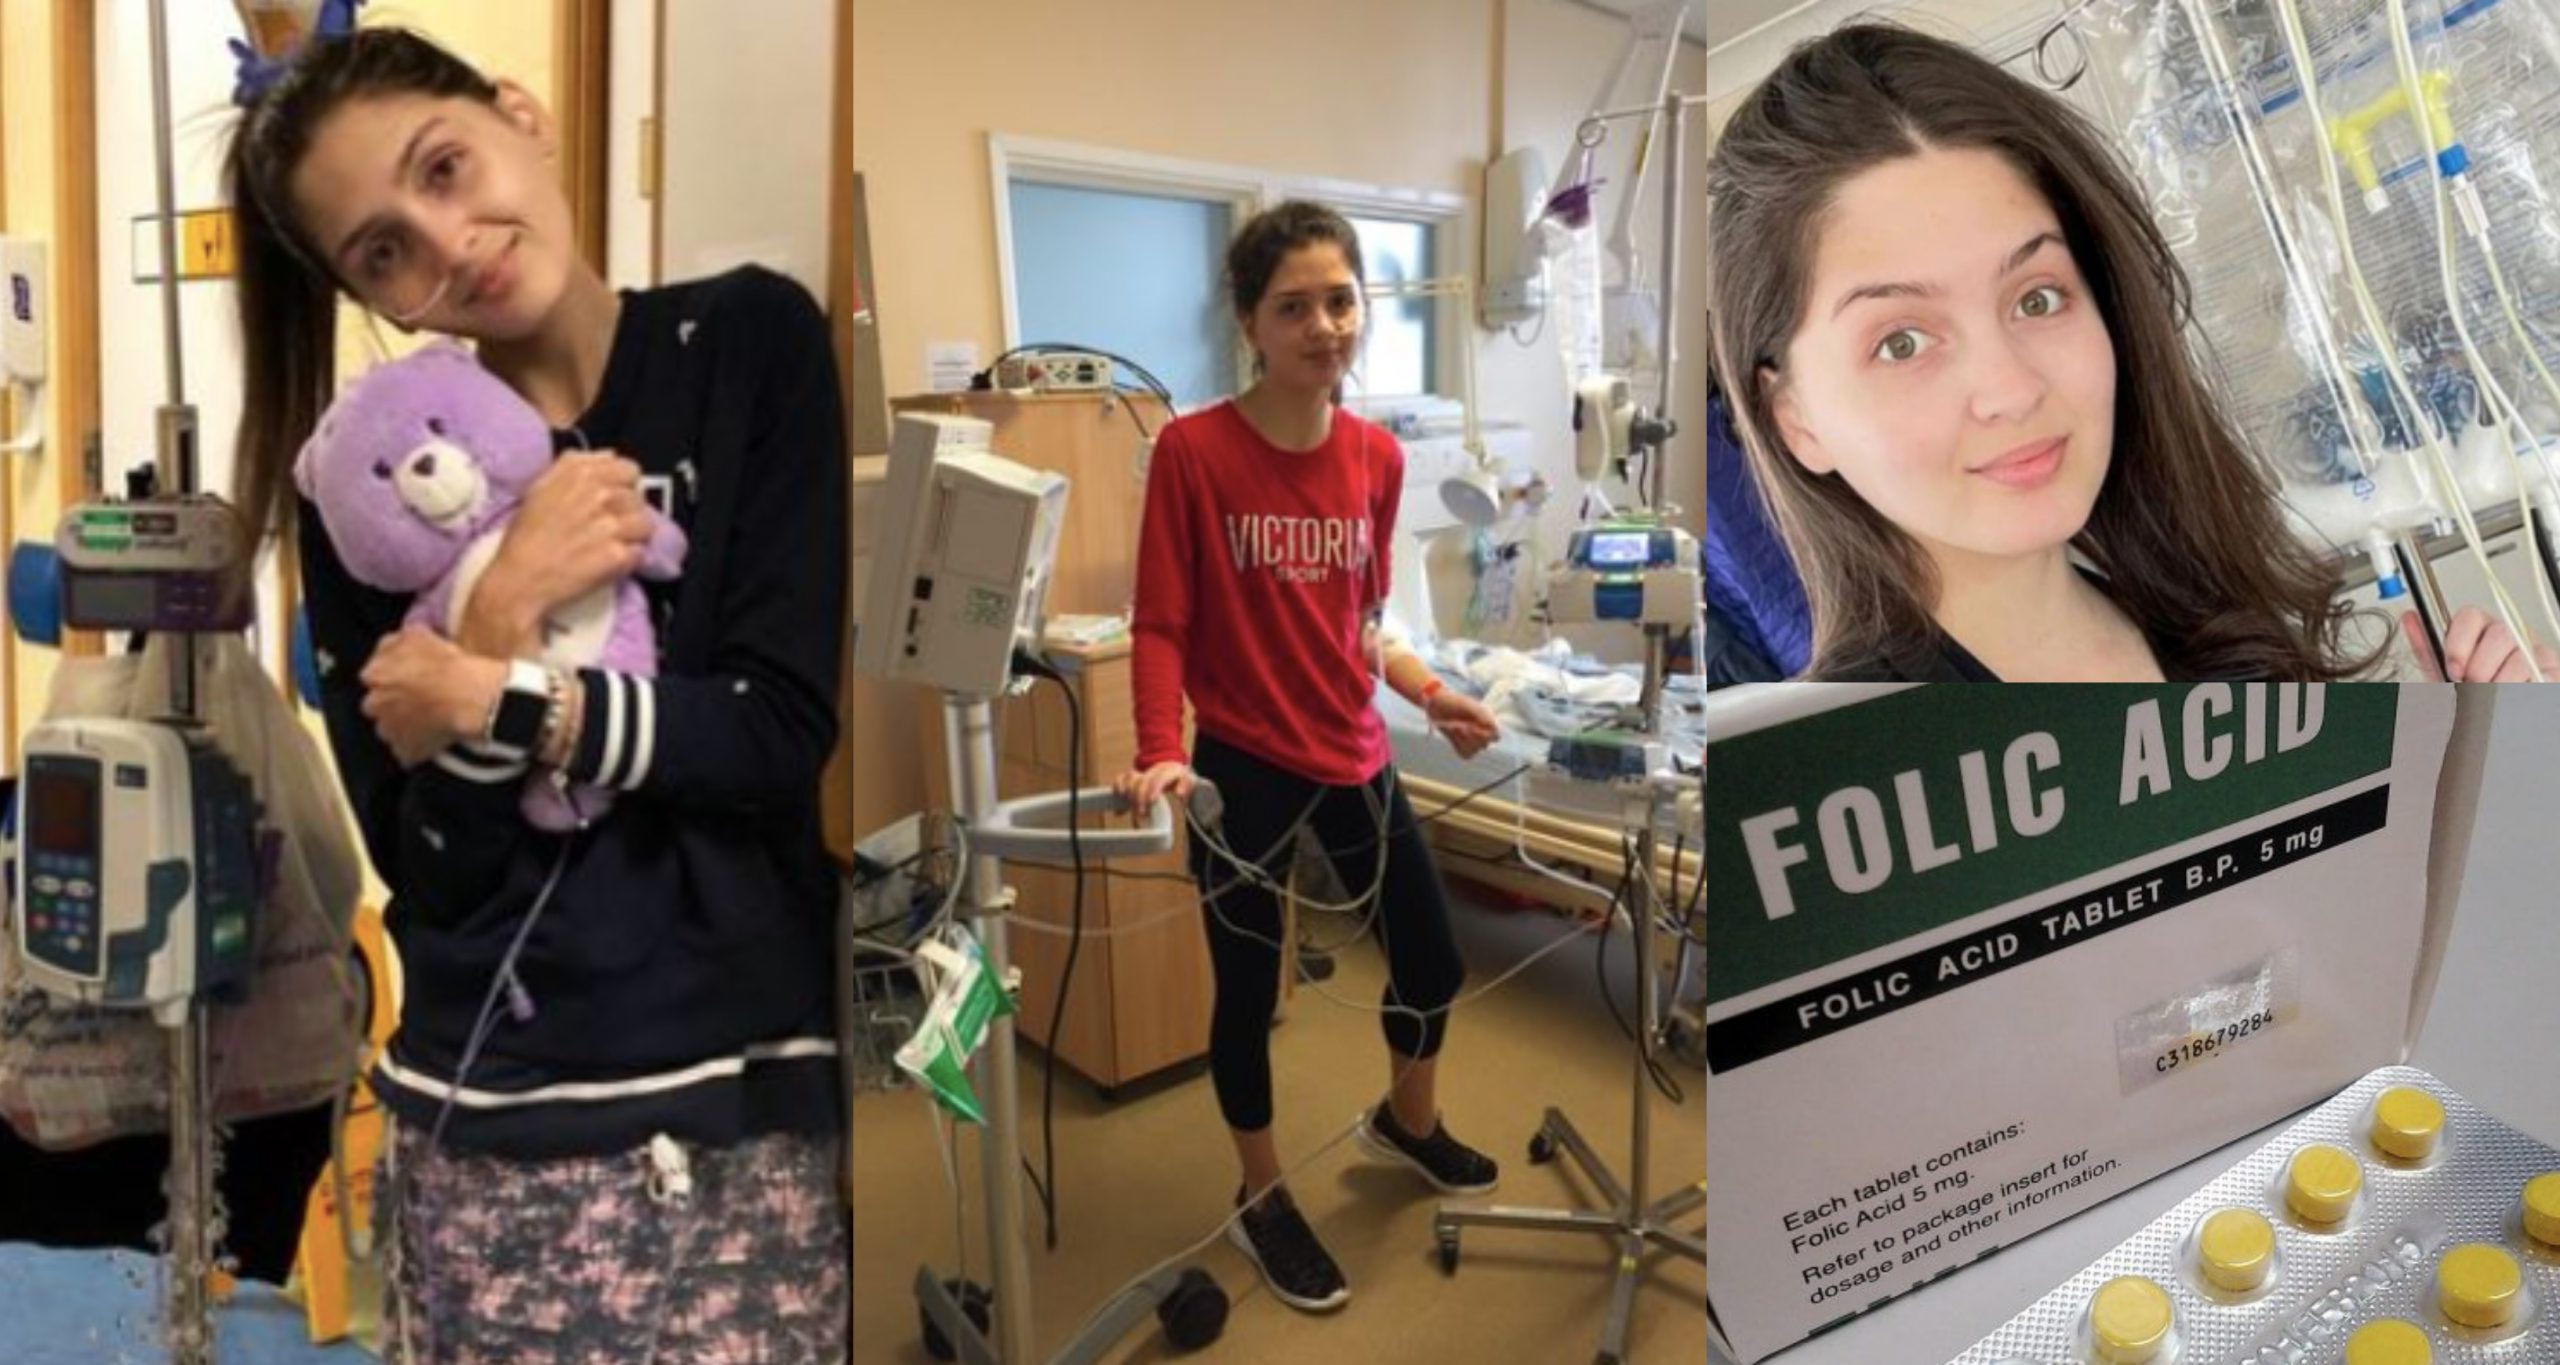 Ibu Tak Disaran Ambil Asid Folik Ketika Hamil 20 Tahun Lepas, Gadis Hidap Spina Bifida Menang Saman Terhadap Doktor